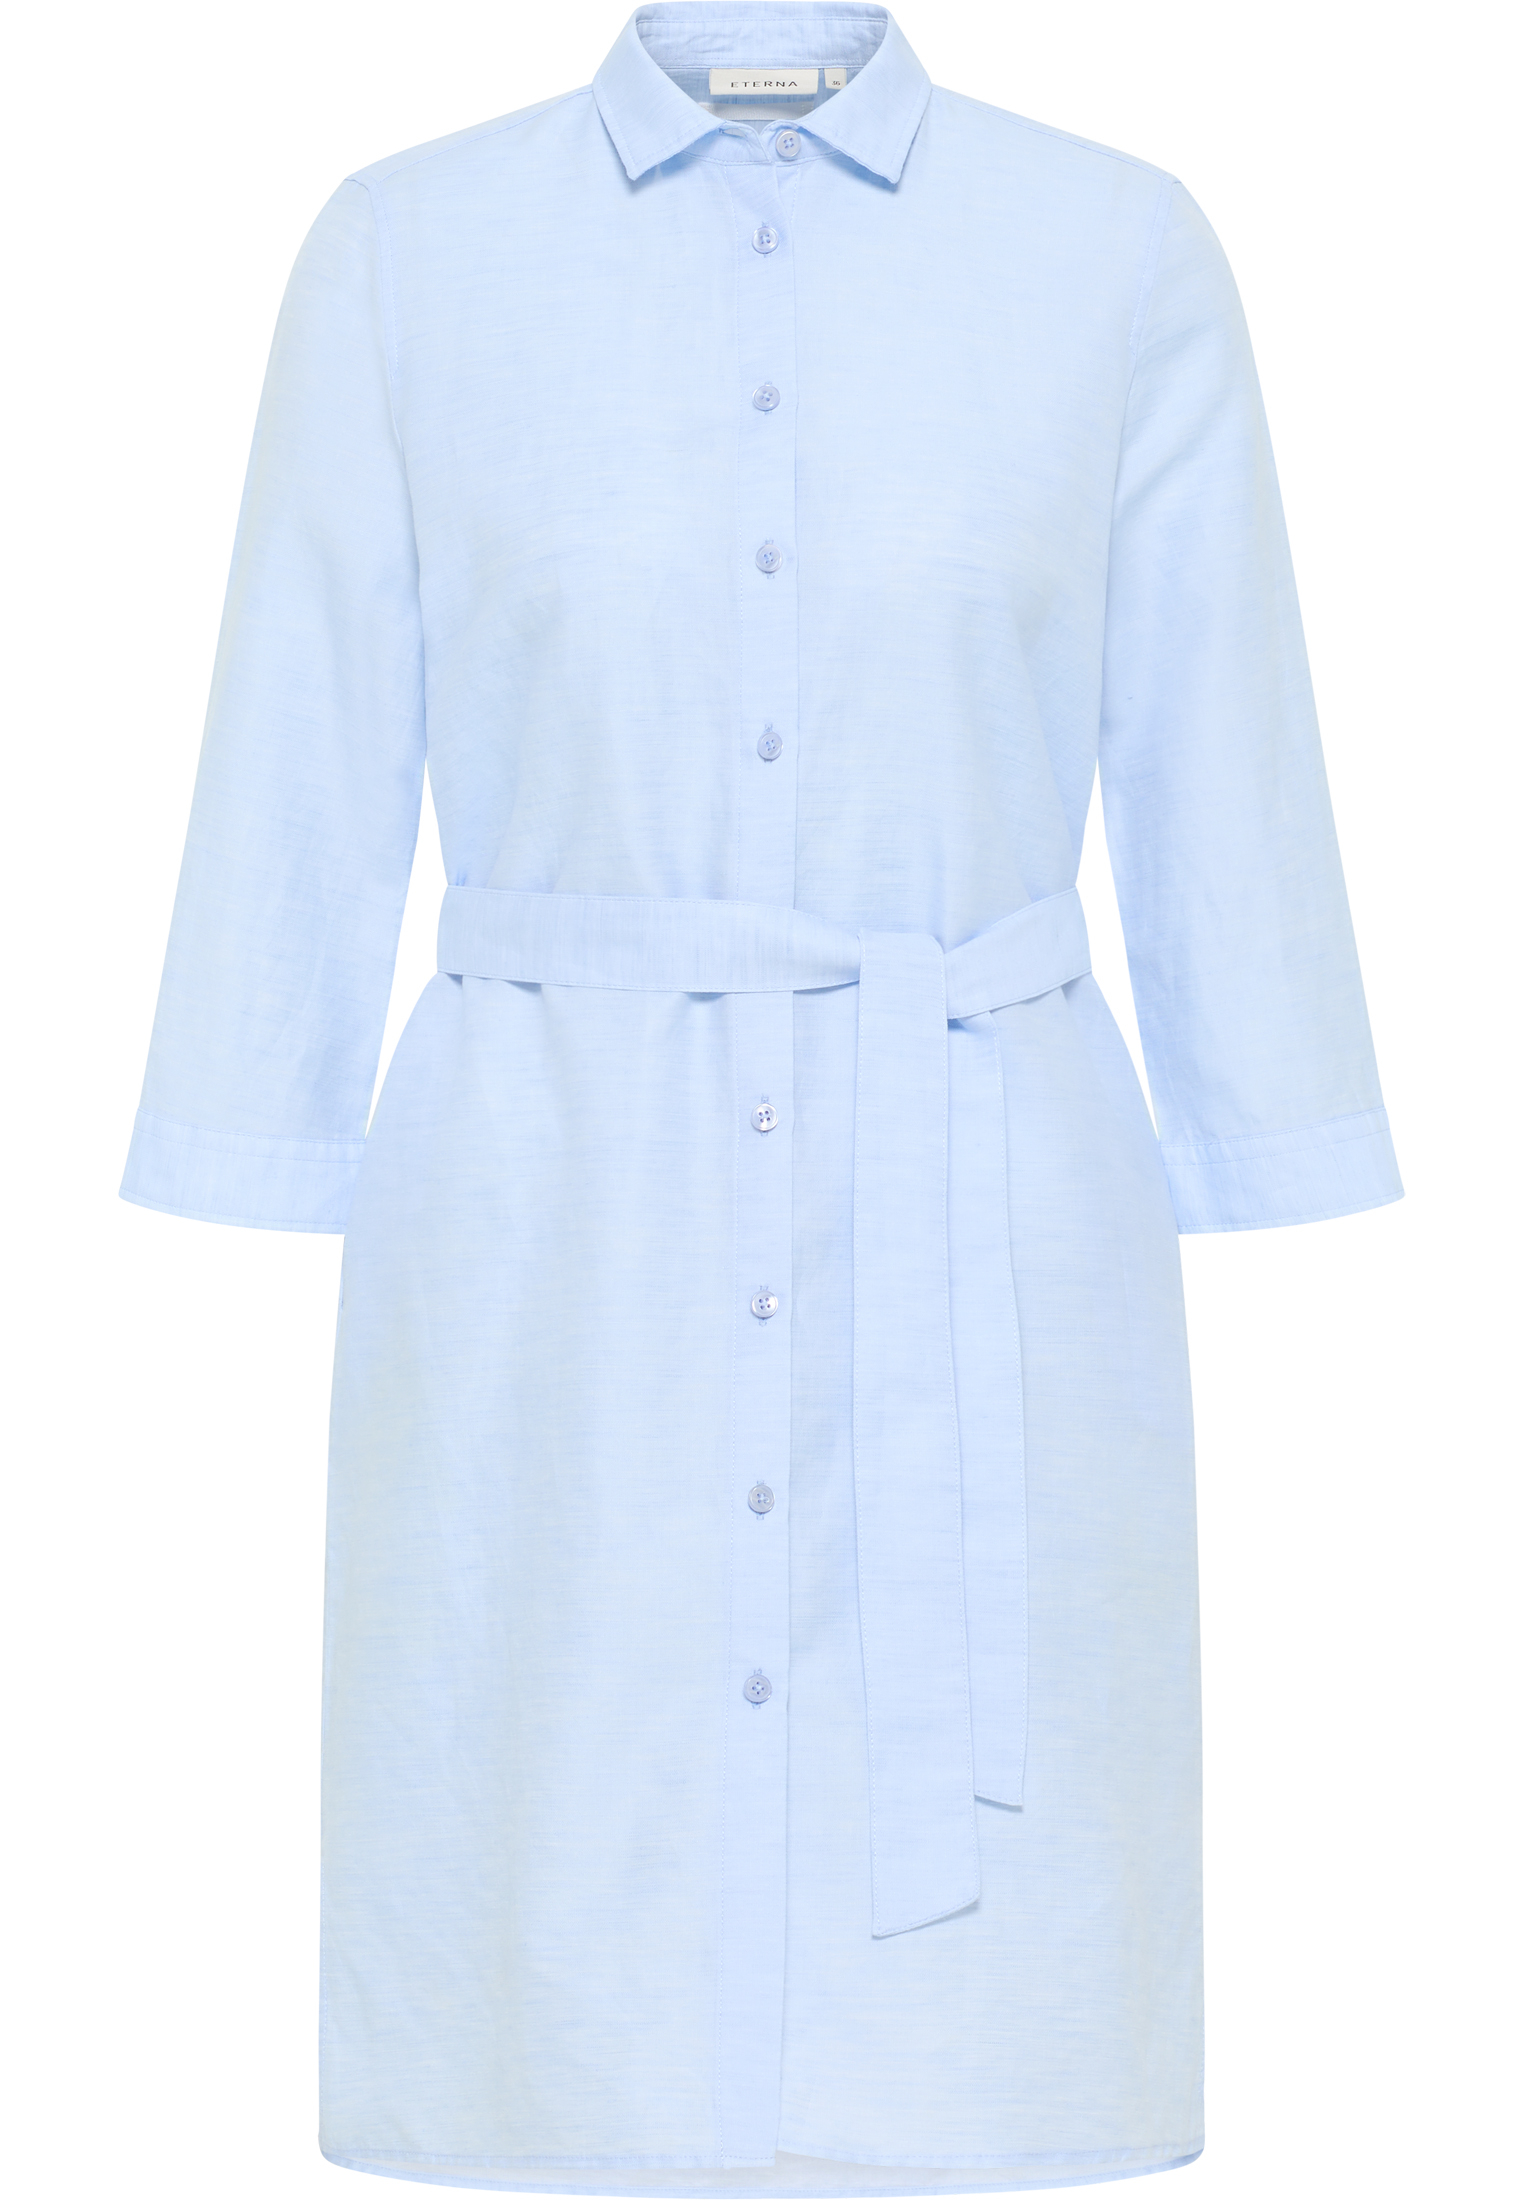 Linen Shirt Bluse in hellblau | unifarben hellblau 2DR00264-01-11-46-3/4 | 3/4-Arm | 46 